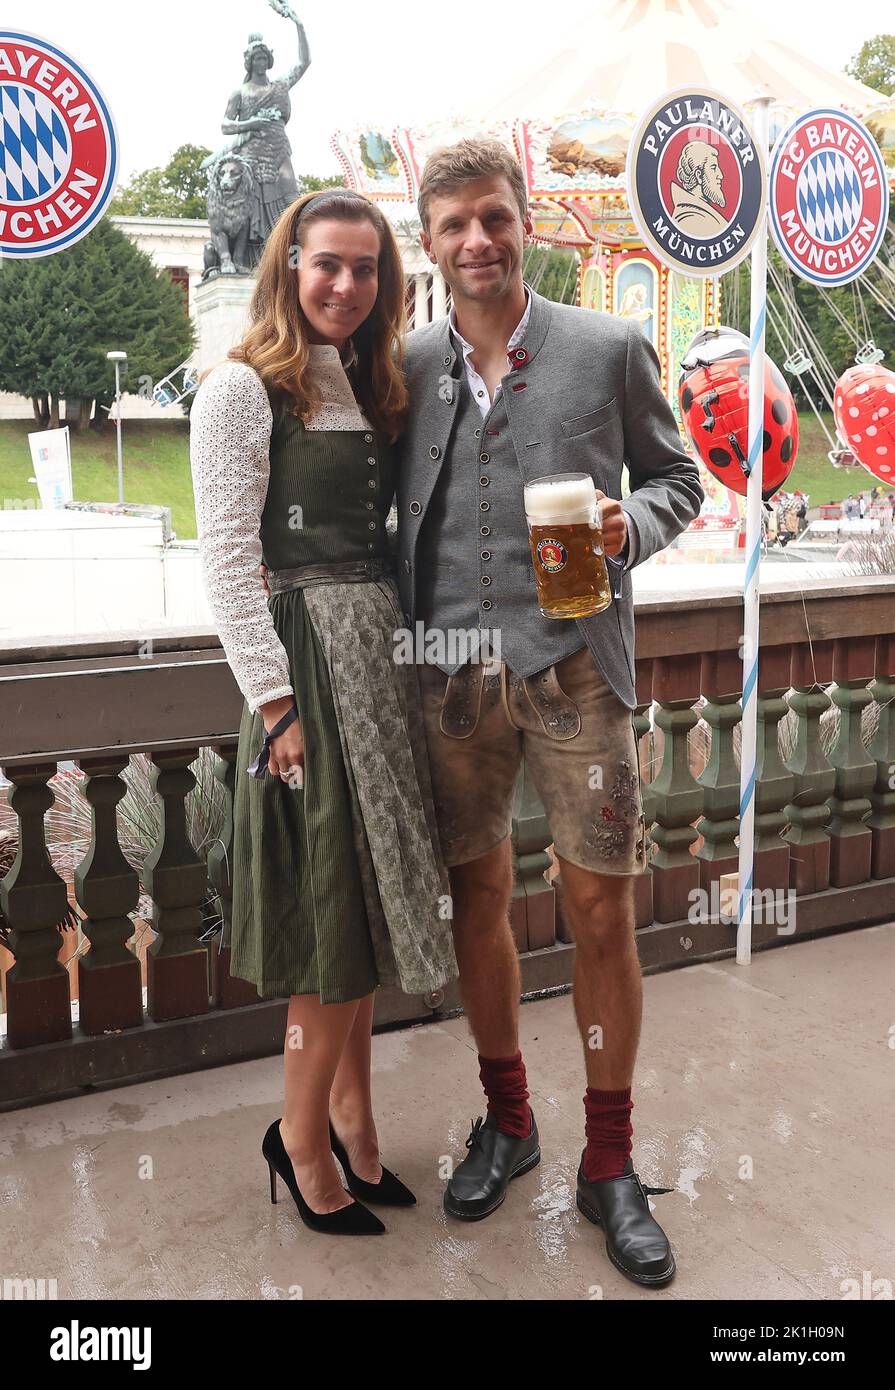 Thomas Mueller mit Frau Lisa  diesjŠhriger Besuch des MŸnchner Oktoberfest des FC Bayern MŸnchen im KŠferzelt  Poolfoto FC Bayern MŸnchen © diebilderwelt / Alamy Stock Stock Photo